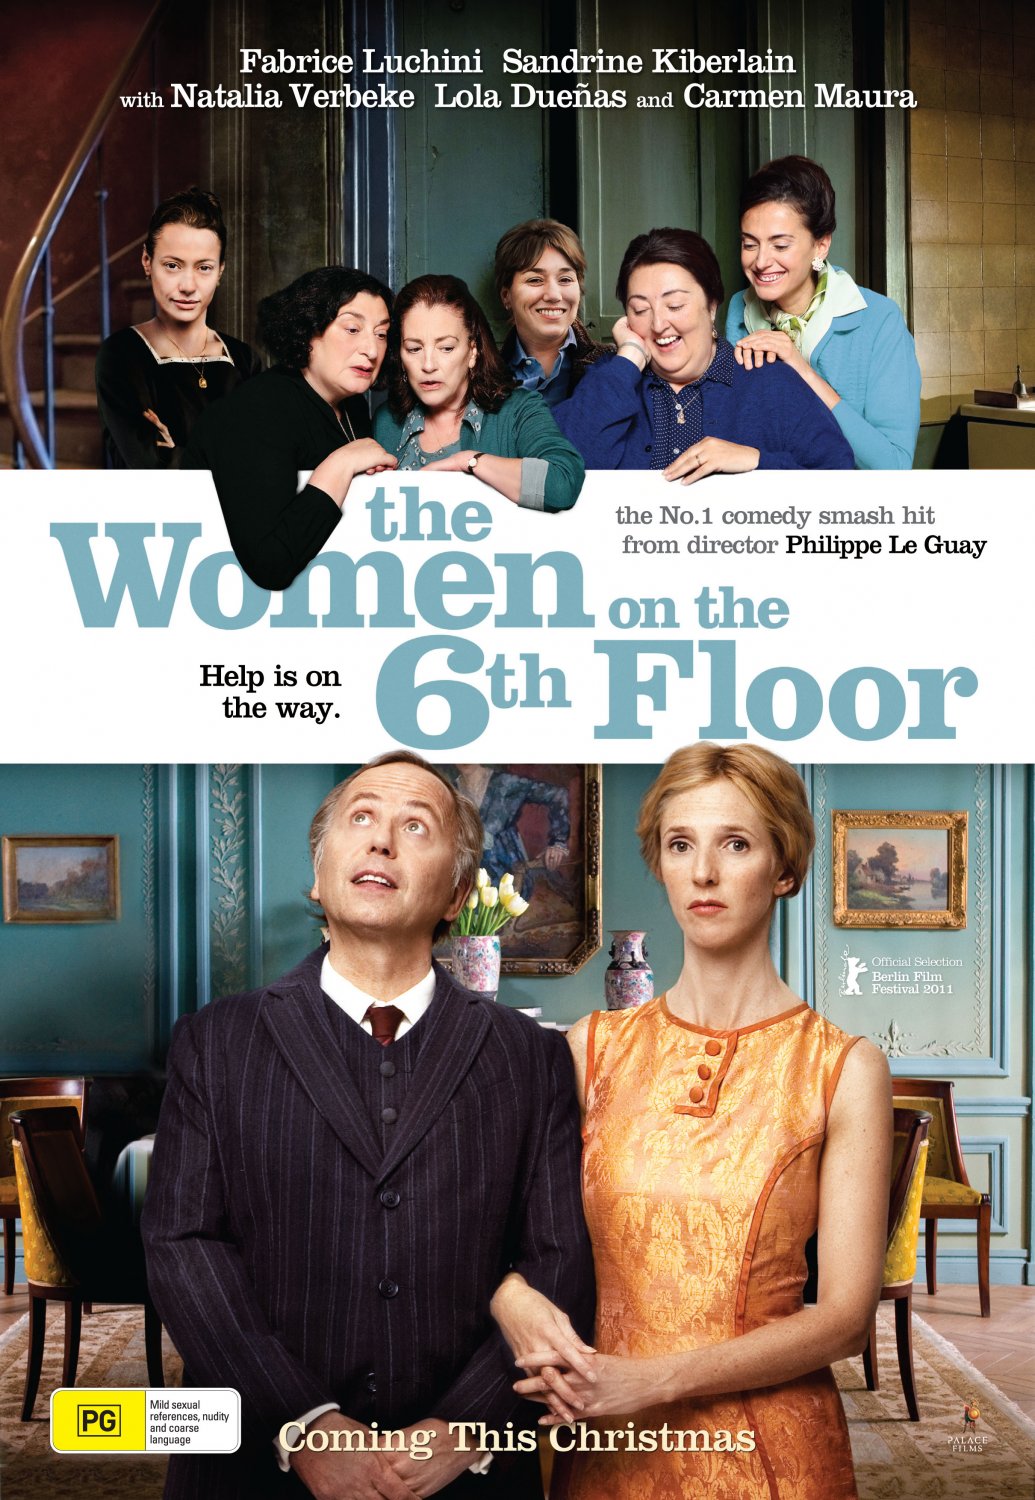 Extra Large Movie Poster Image for Les femmes du 6ème étage (#2 of 2)